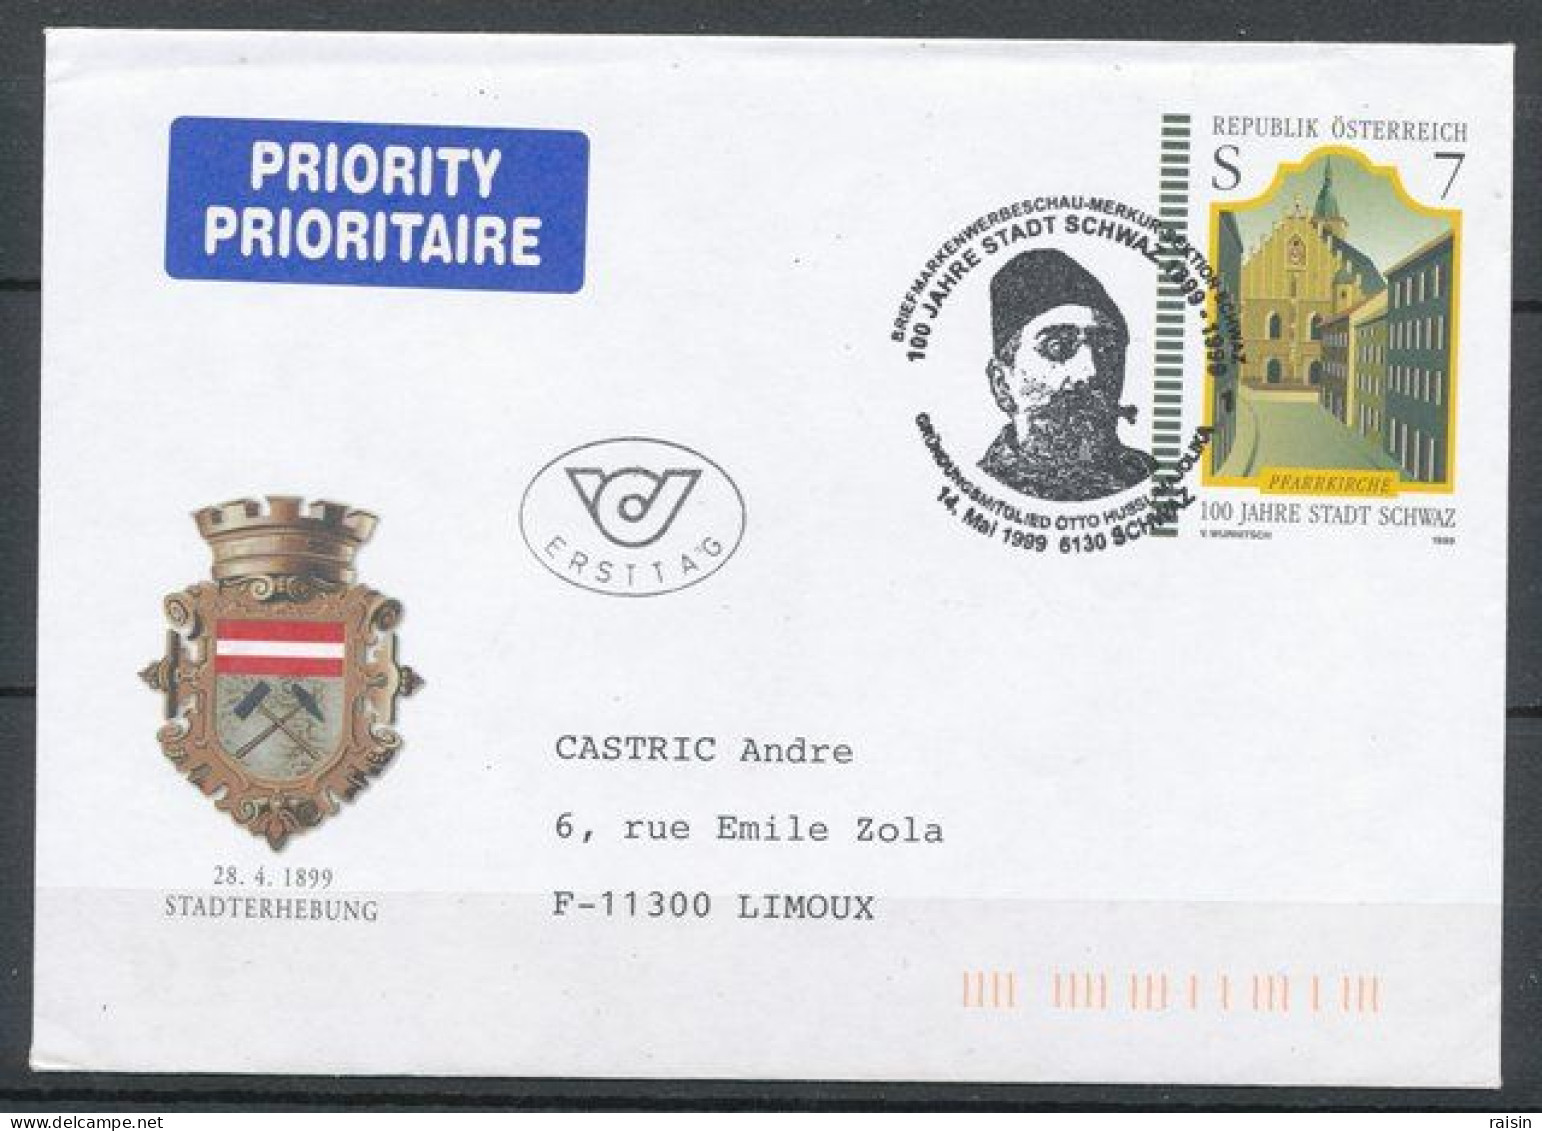 Autriche 1999  Entier Postal Enveloppe 1er Jour Avec Oblitération Spéciale Illustrée Ayant Circulé - Covers